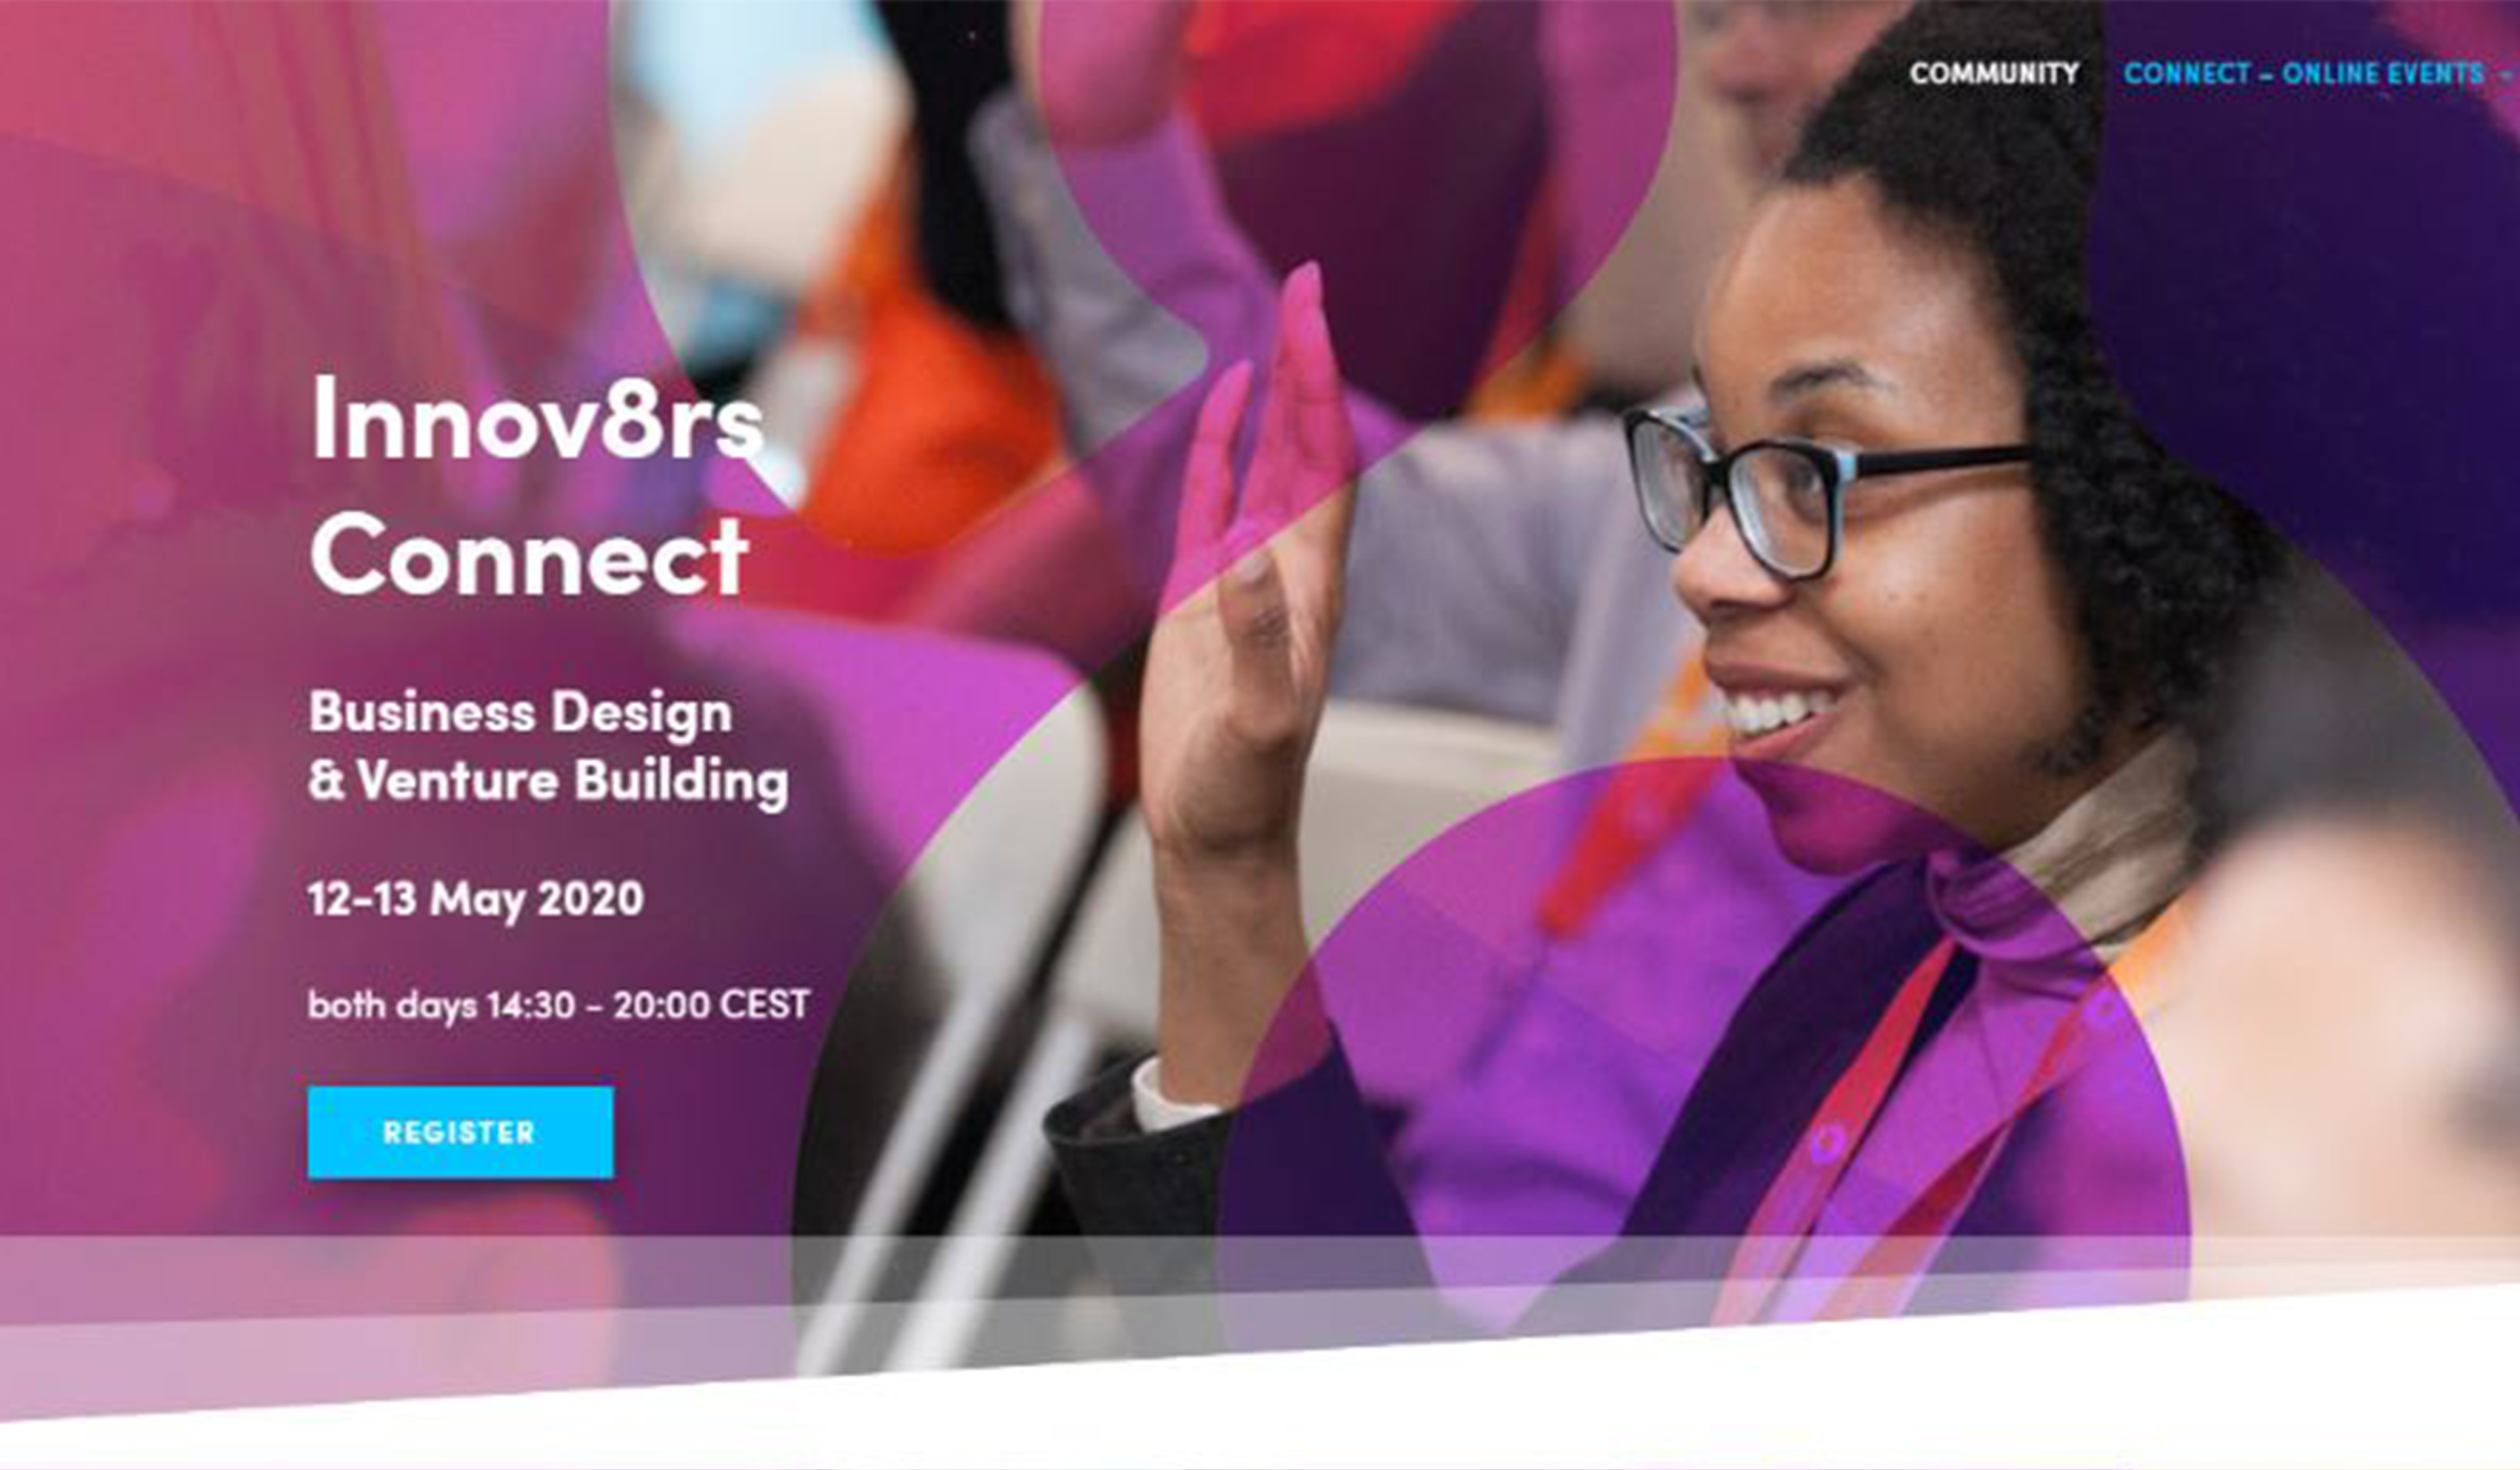 Innovat8rs - Business Design & Venture Building - Webinar